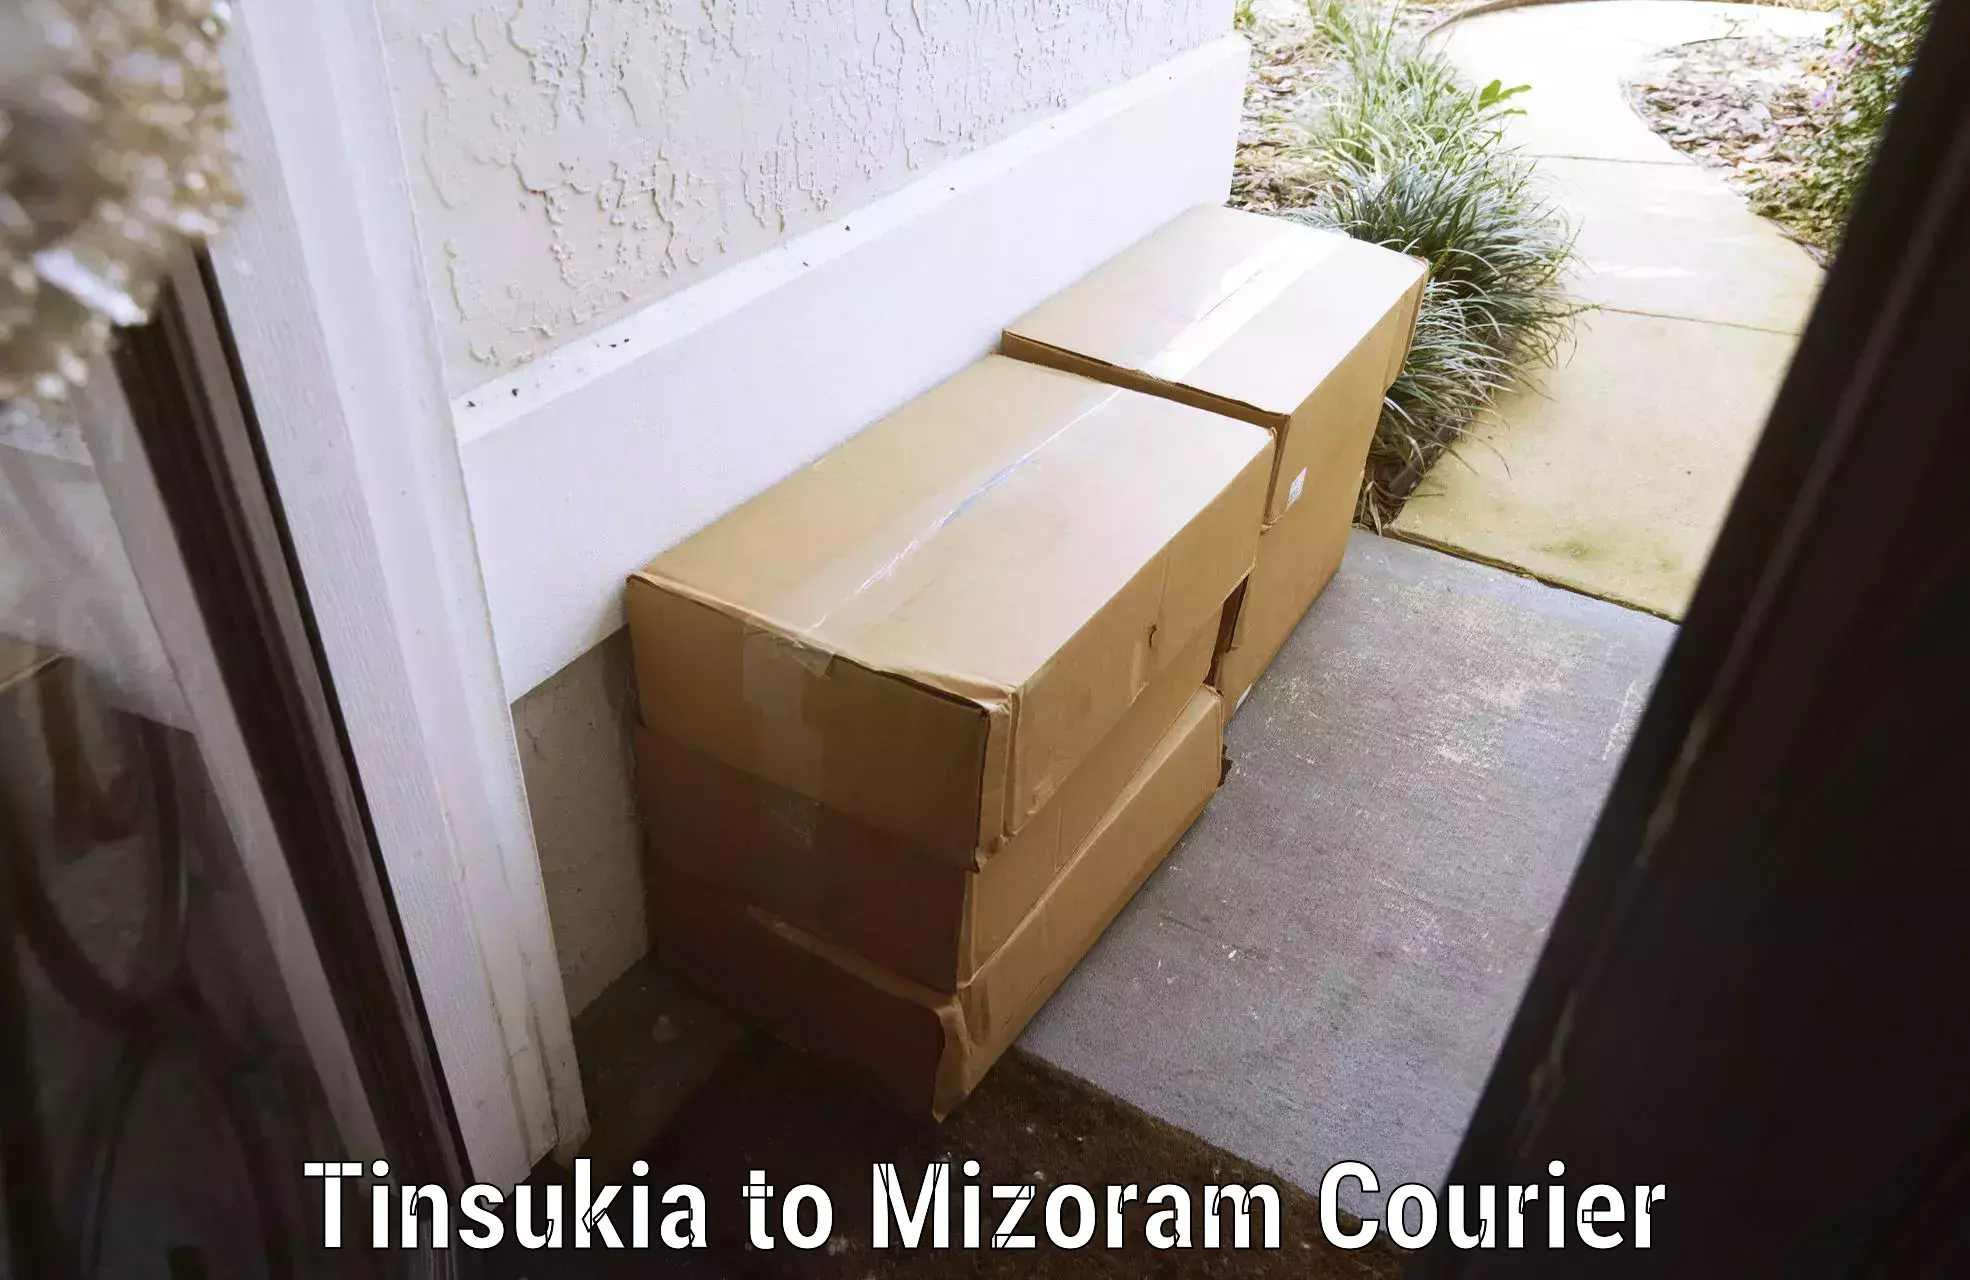 Luggage delivery news Tinsukia to Mizoram